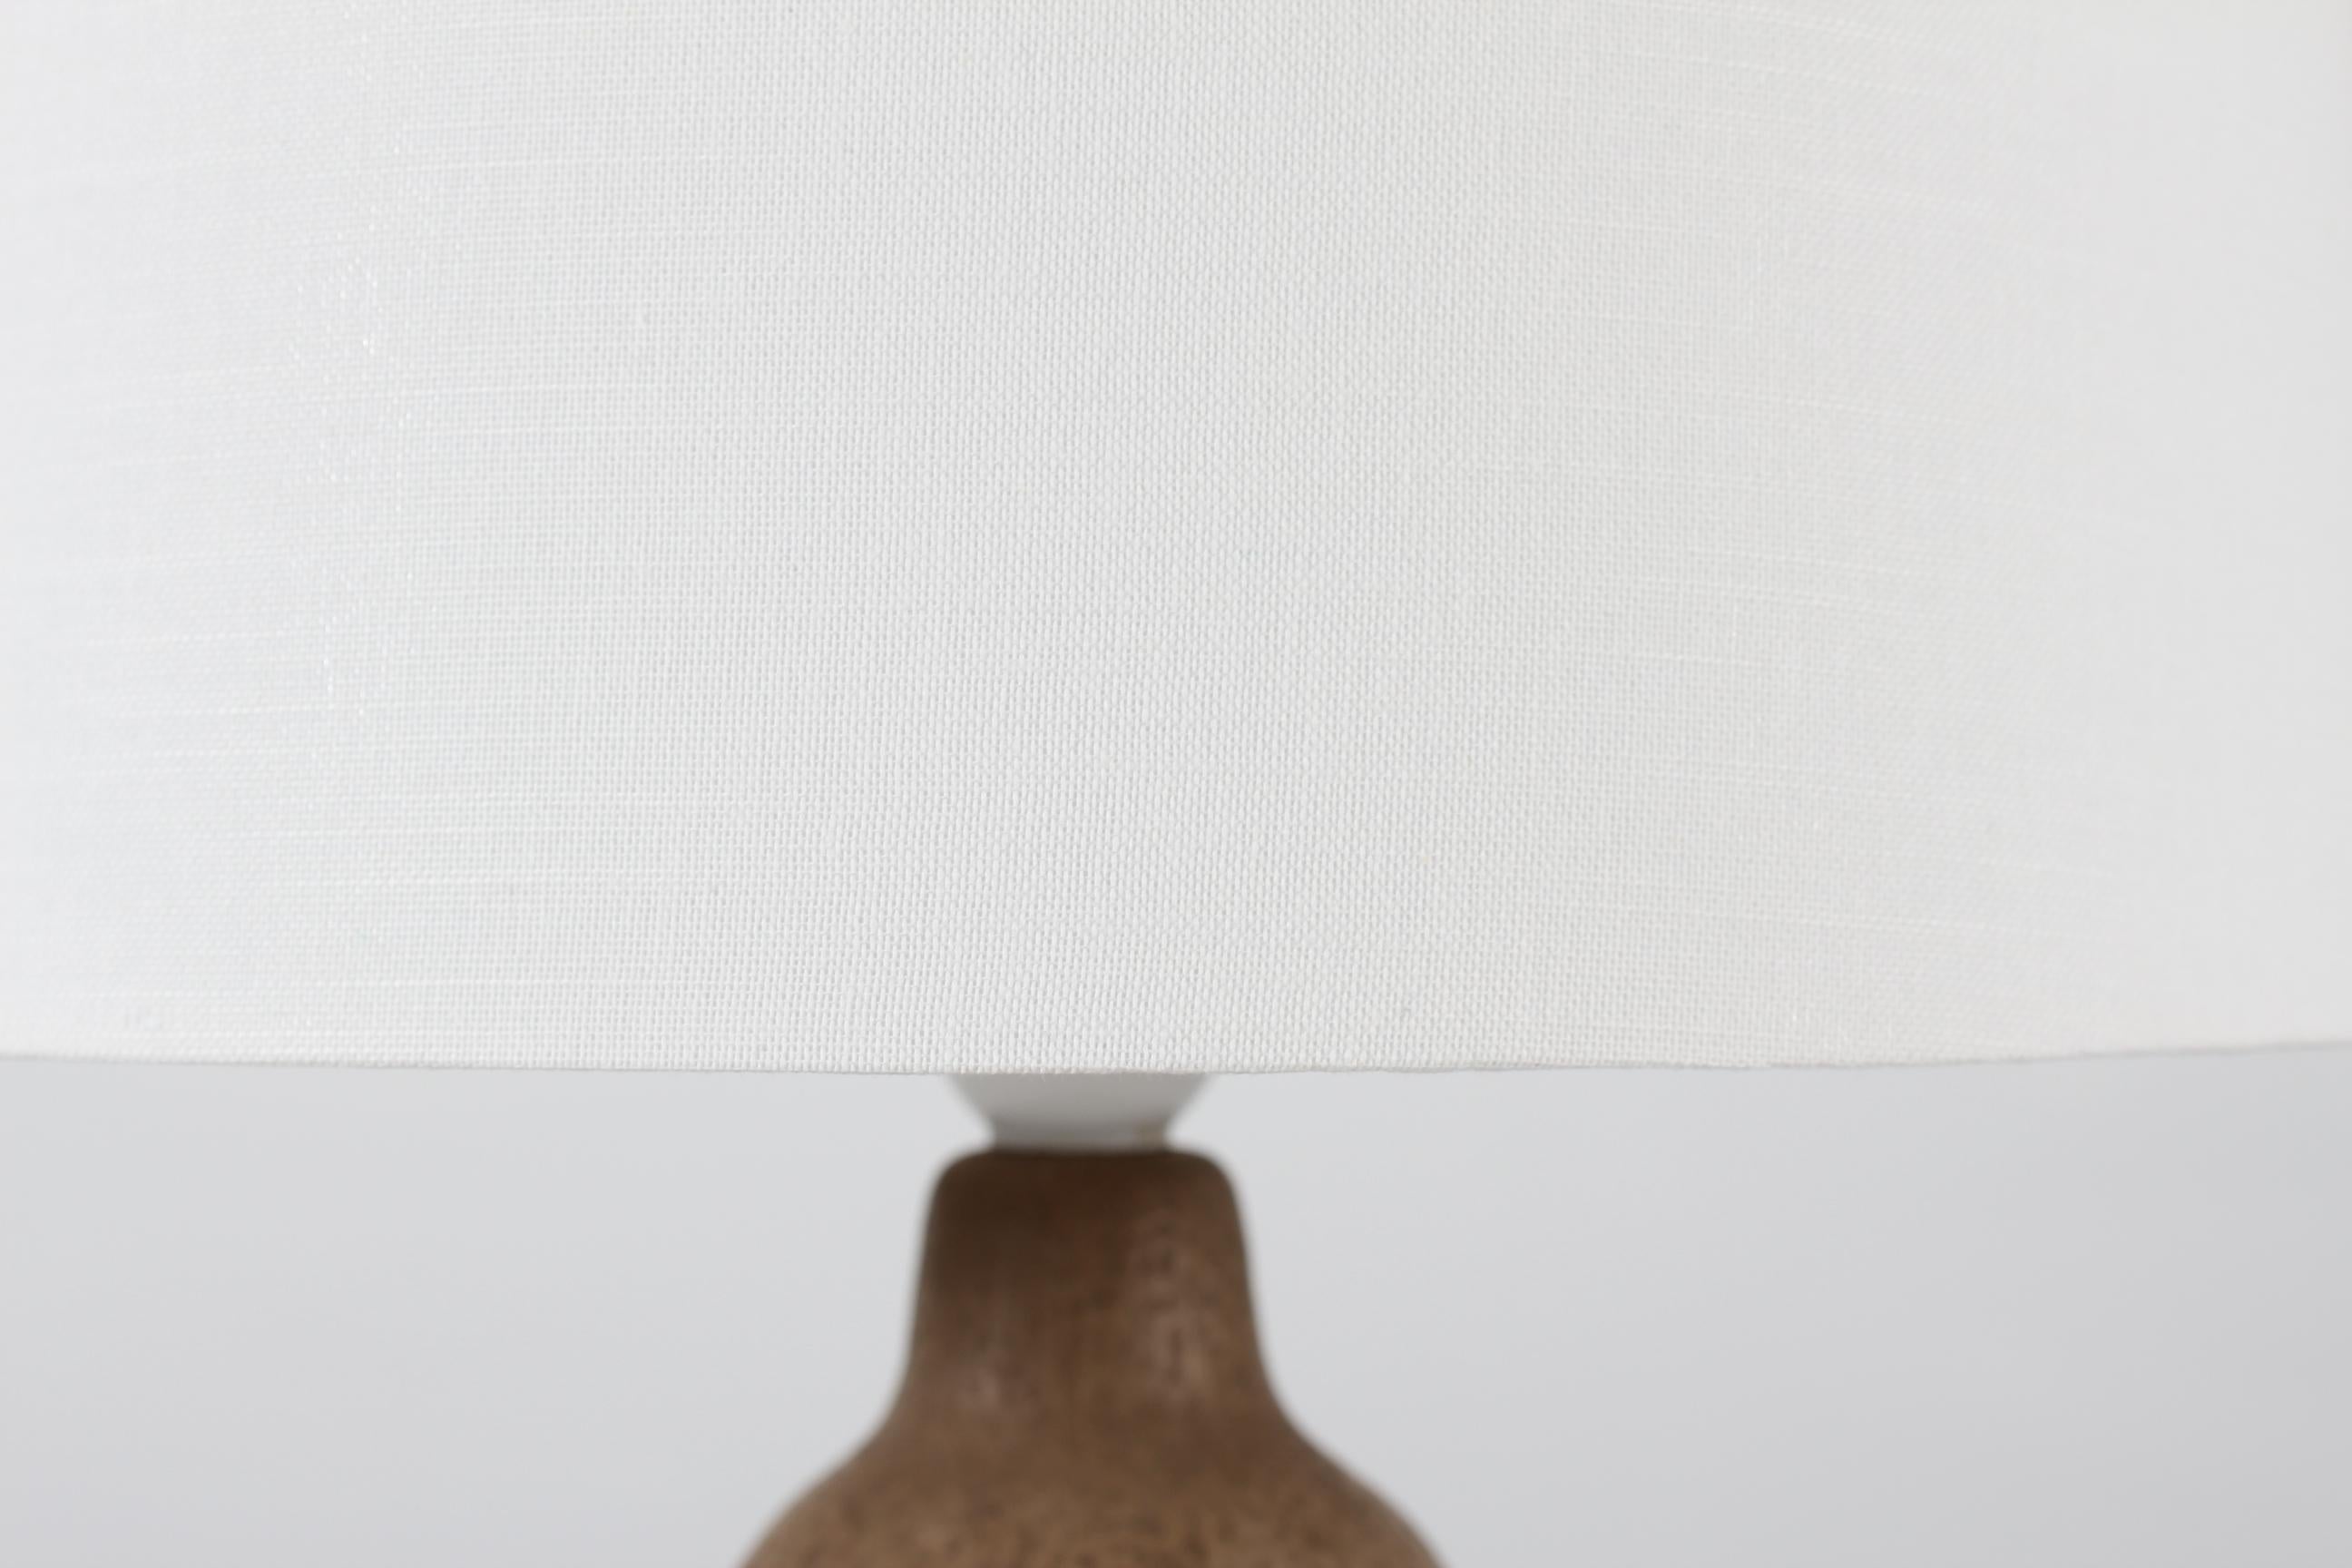 Lampe de table en céramique d'Einar Johansen, fabriquée dans son propre studio de céramique au Danemark, vers les années 1960
Le pied de lampe brun clair non émaillé présente un motif en relief de petites feuilles.

Un nouvel abat-jour conçu et